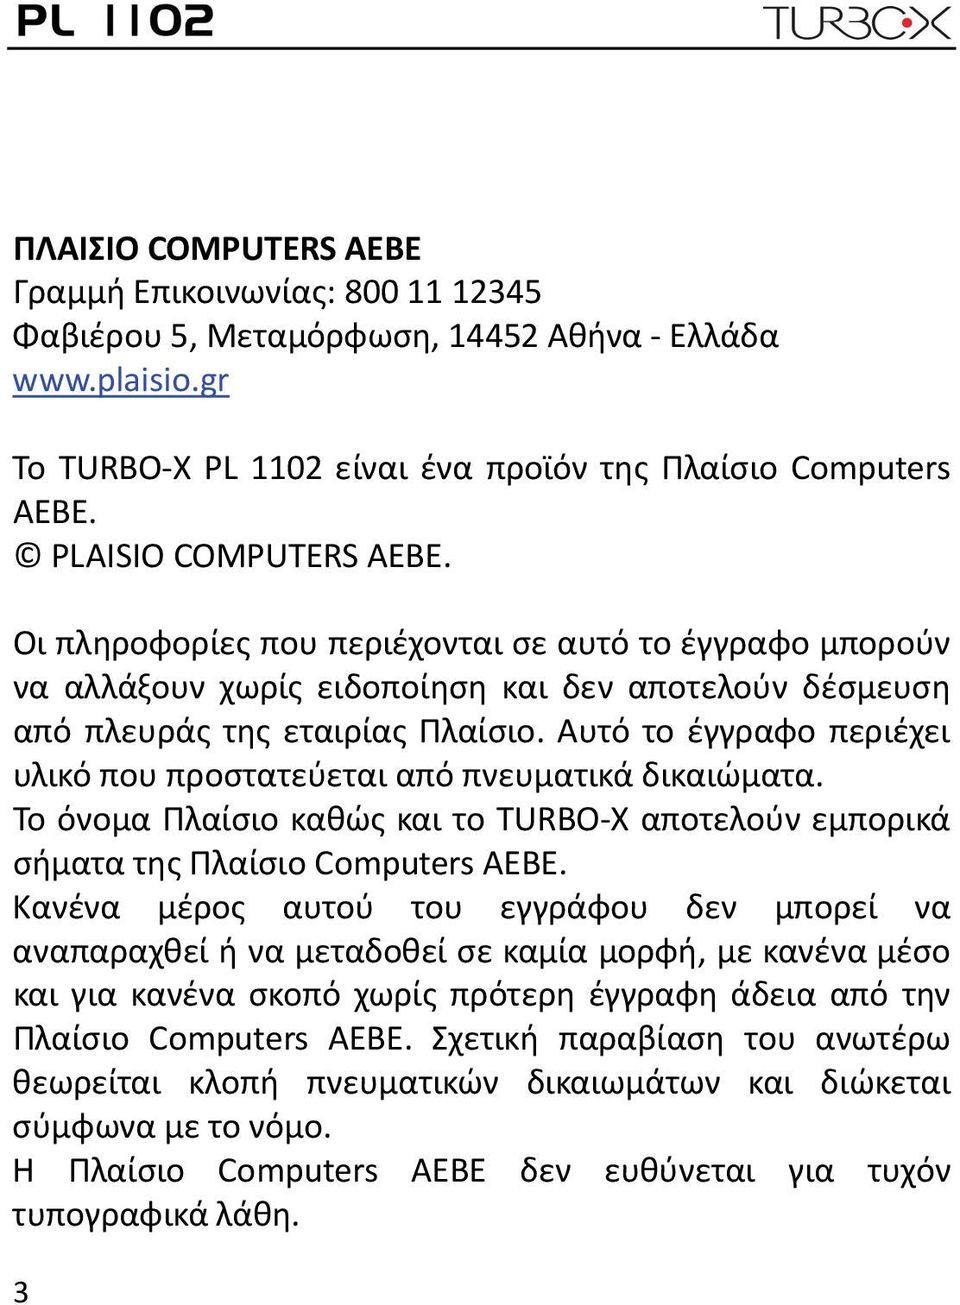 Αυτό το έγγραφο περιέχει υλικό που προστατεύεται από πνευματικά δικαιώματα. Το όνομα Πλαίσιο καθώς και το TURBO X αποτελούν εμπορικά σήματα της Πλαίσιο Computers ΑΕΒΕ.